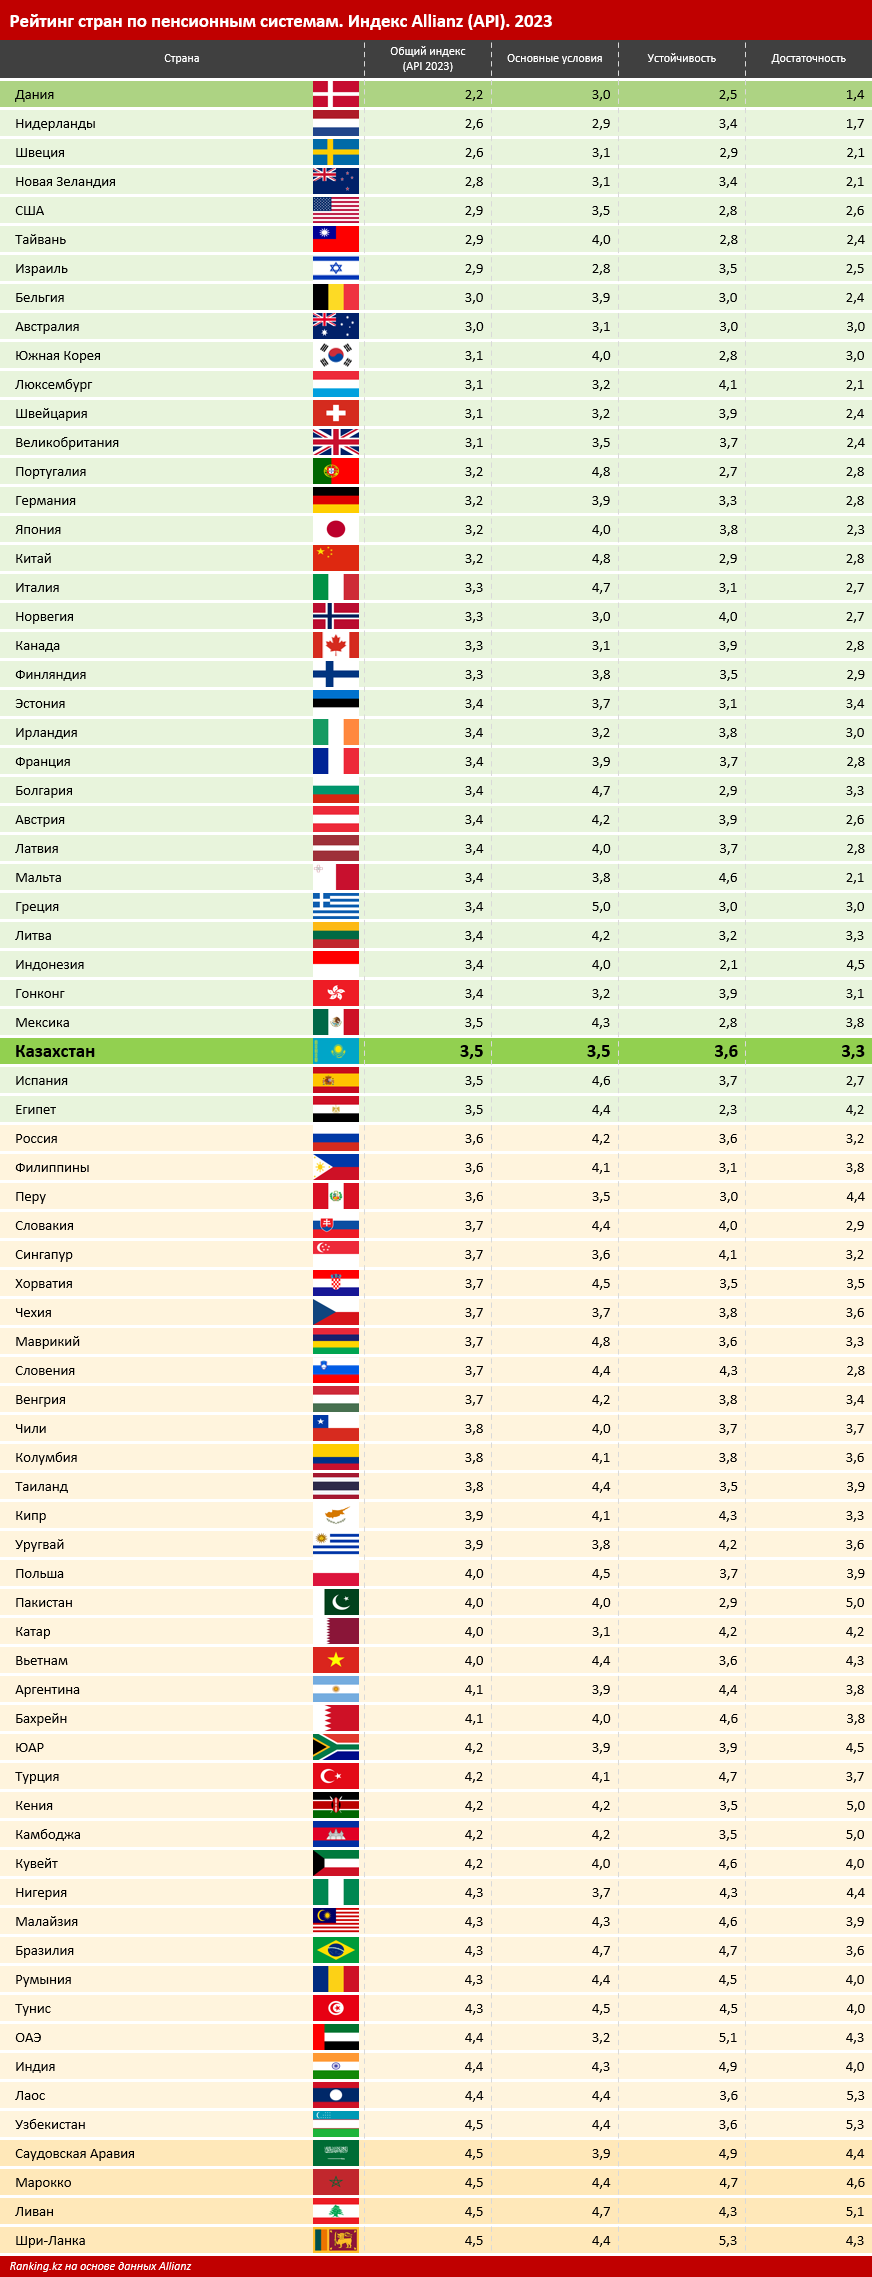 Устойчивая пенсионная система: Казахстан вошёл в группу лучших стран в рейтинге пенсионных систем